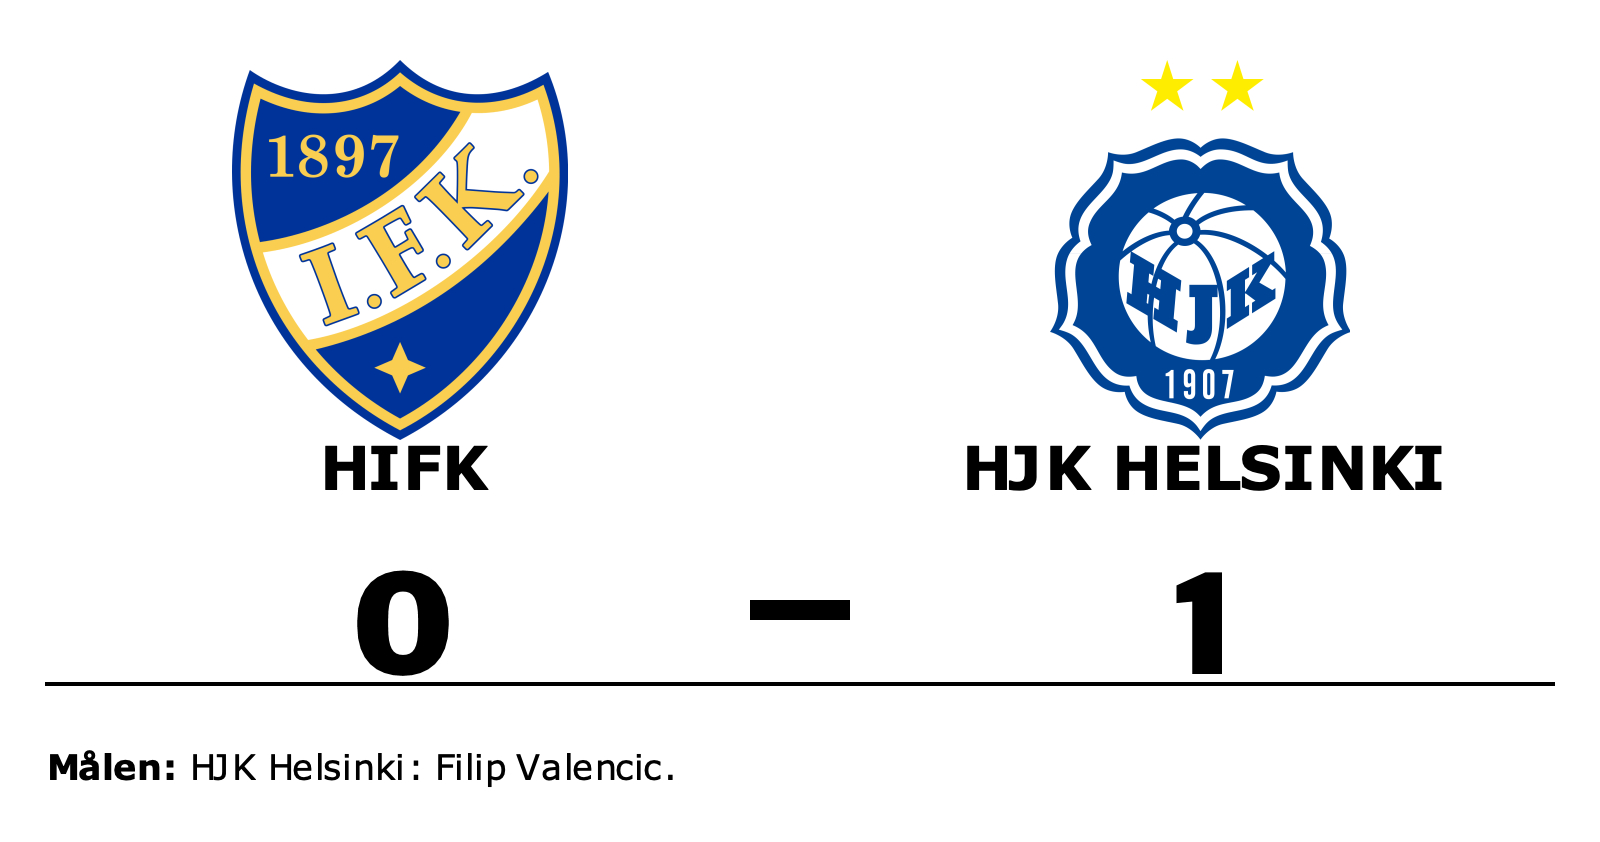 HIFK förlorade mot HJK Helsinki